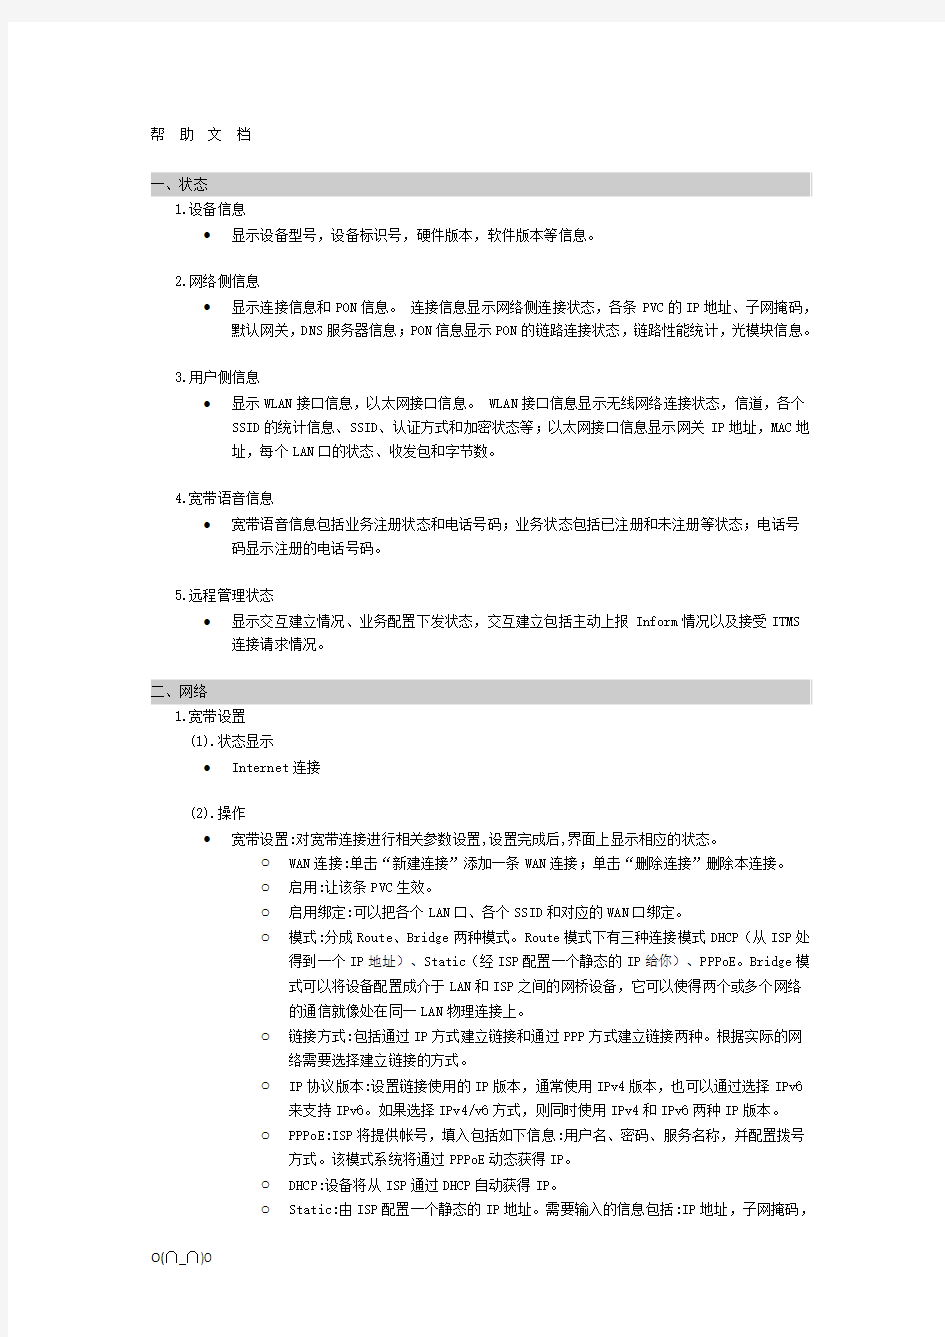 中国移动智能家庭网关帮助文档【精选】